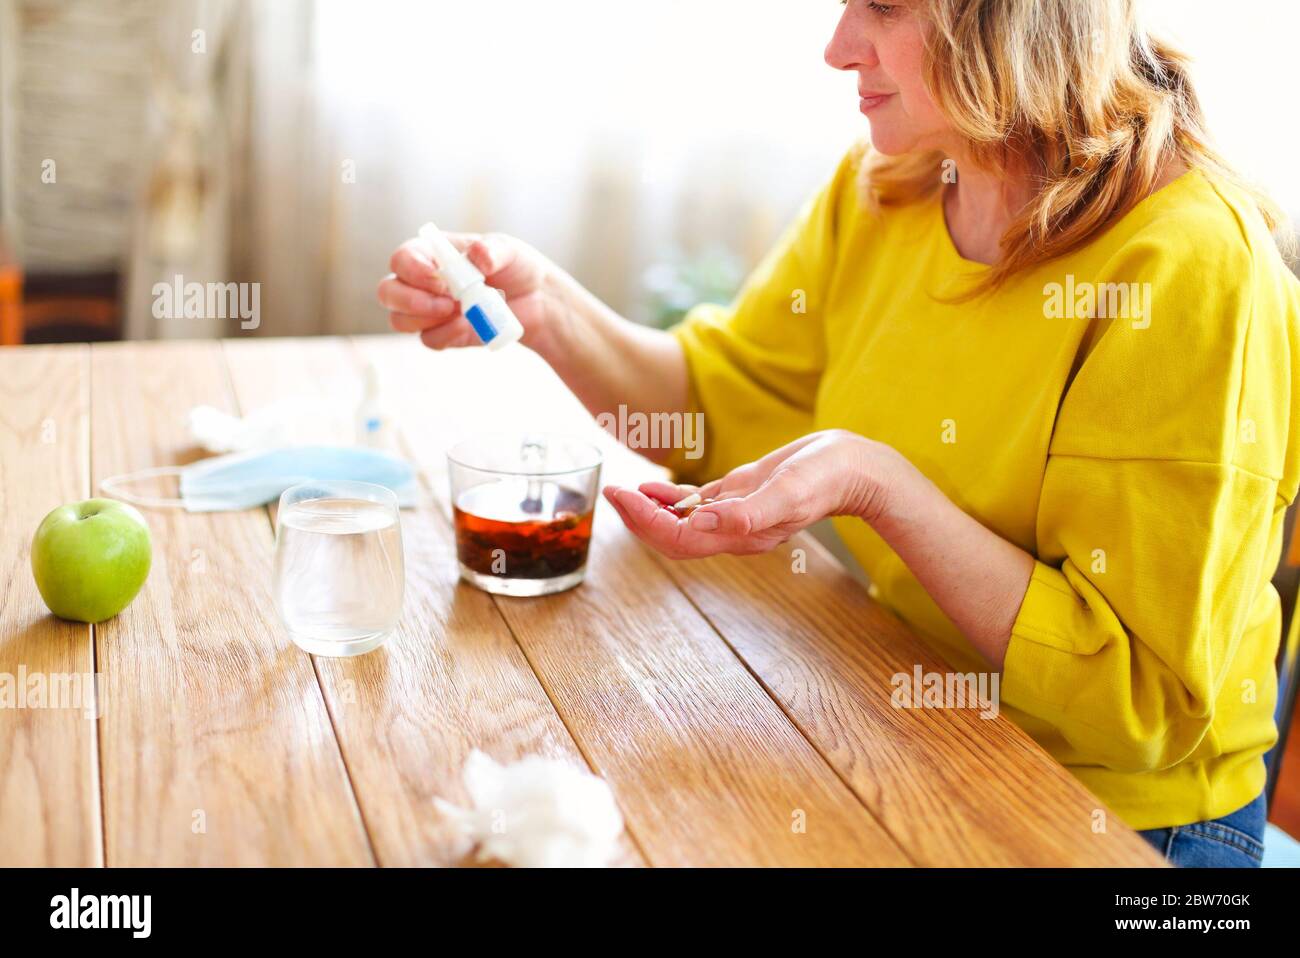 Vue latérale de la récolte femelle d'âge moyen prenant remède de bouteille en plastique tout en étant assis à la table avec une tasse de thé et un masque de protection à la maison Banque D'Images